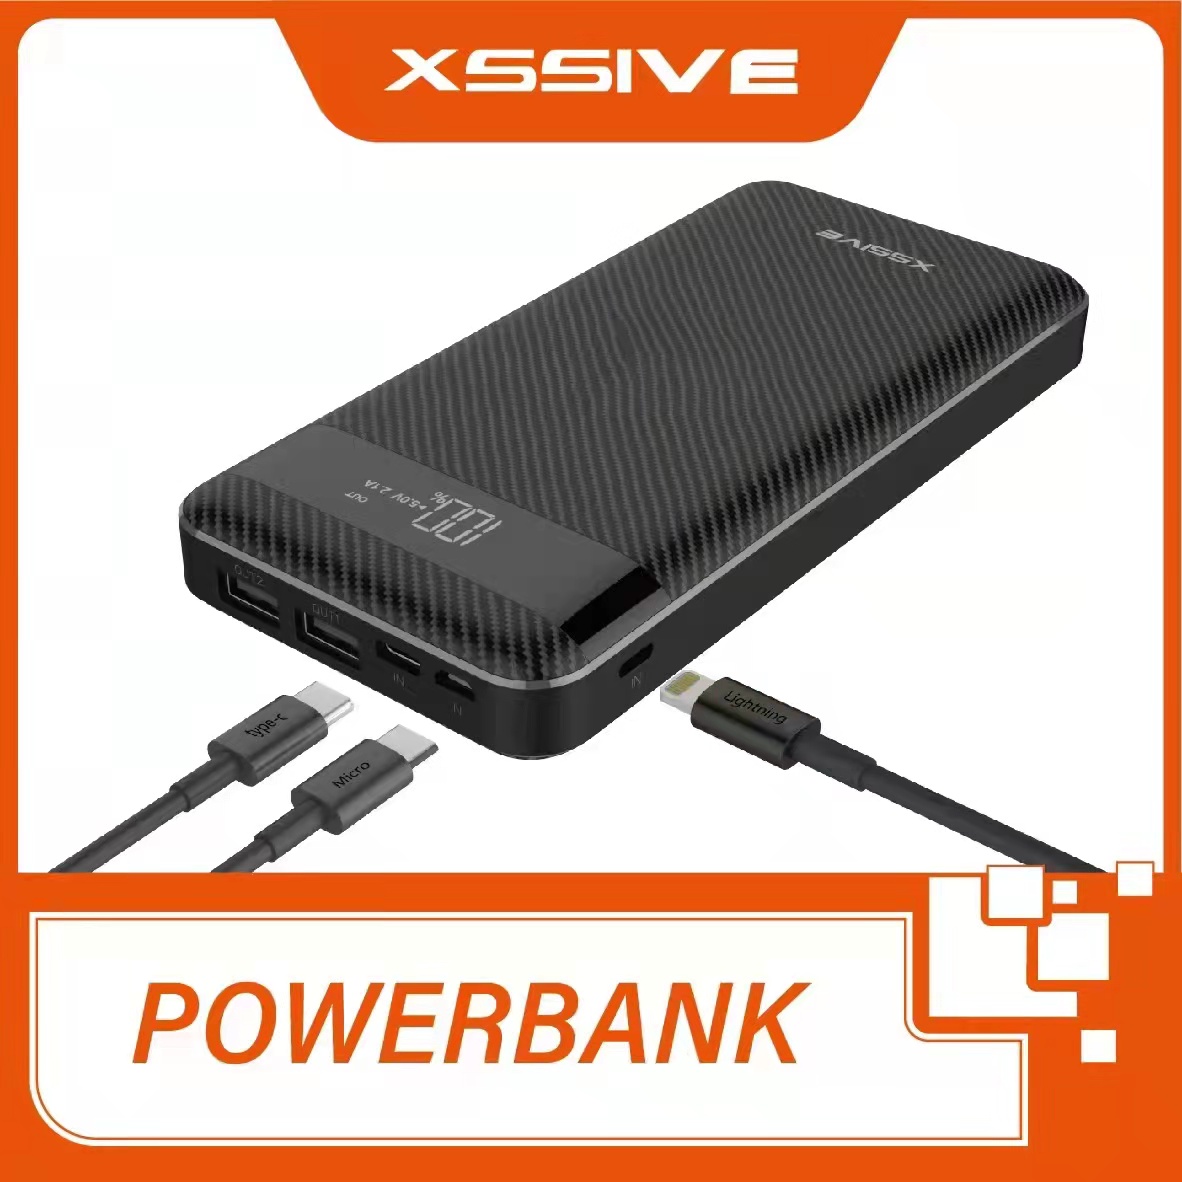 Xssive - Powerbank